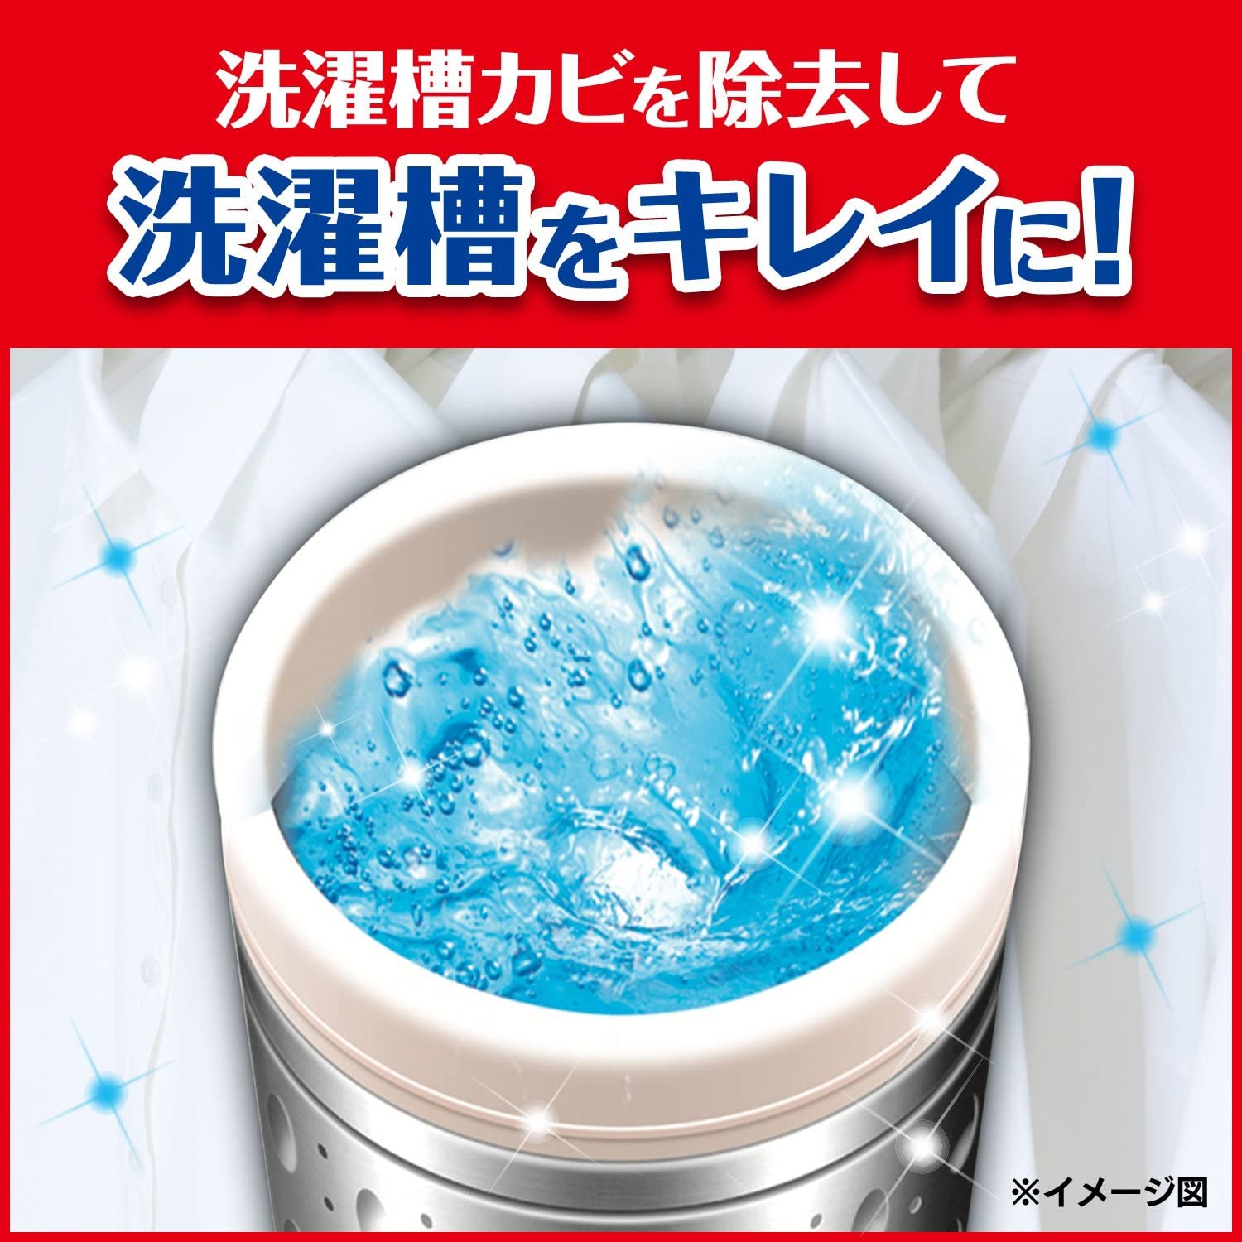 カビキラー 洗たく槽カビキラー (塩素系)の商品画像2 